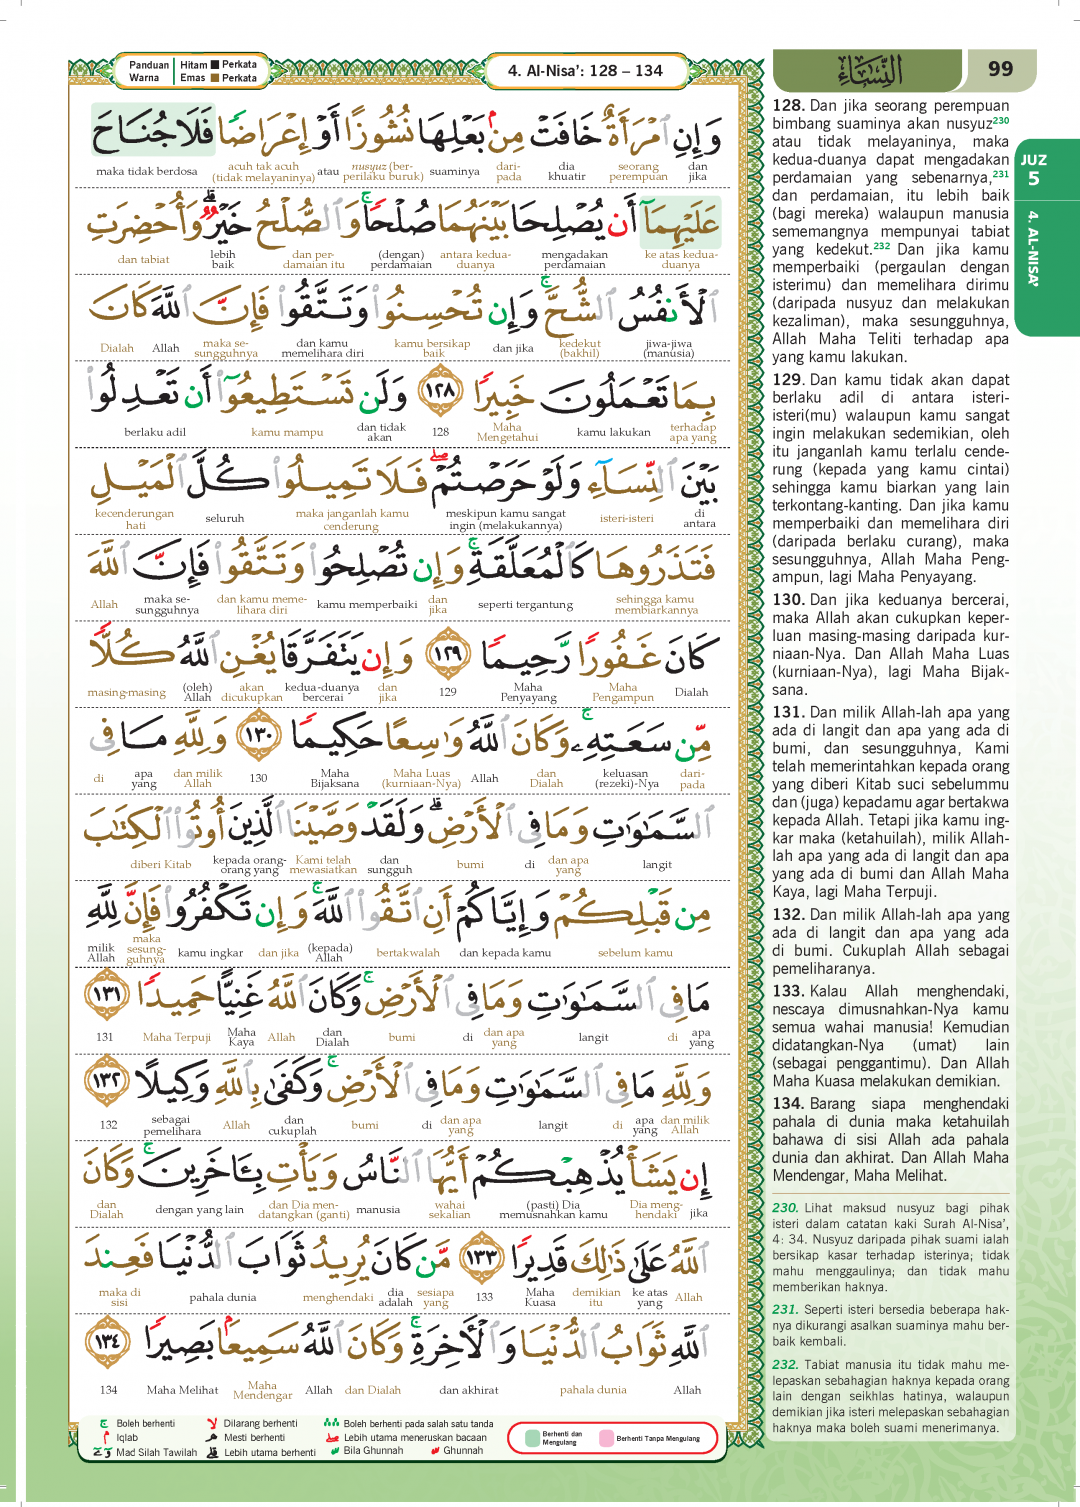 Al-Quran Al-Karim Al-Andalus Perjilid (Terjemahan Perkata + Waqa